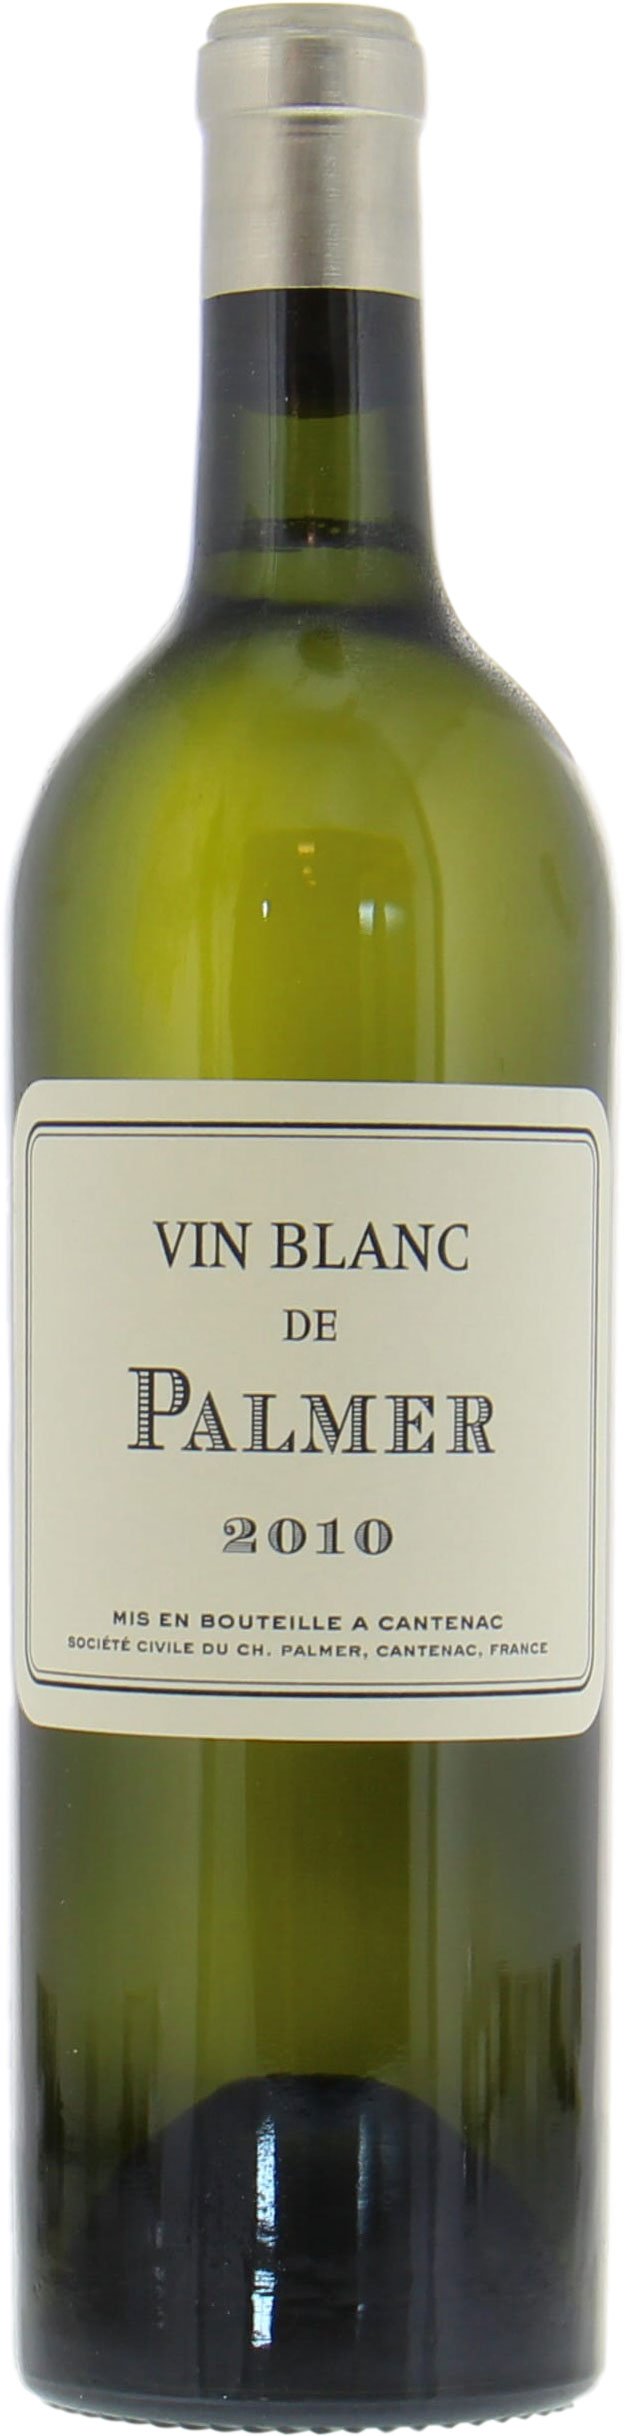 Chateau Palmer - Vin Blanc de Palmer 2010 Perfect